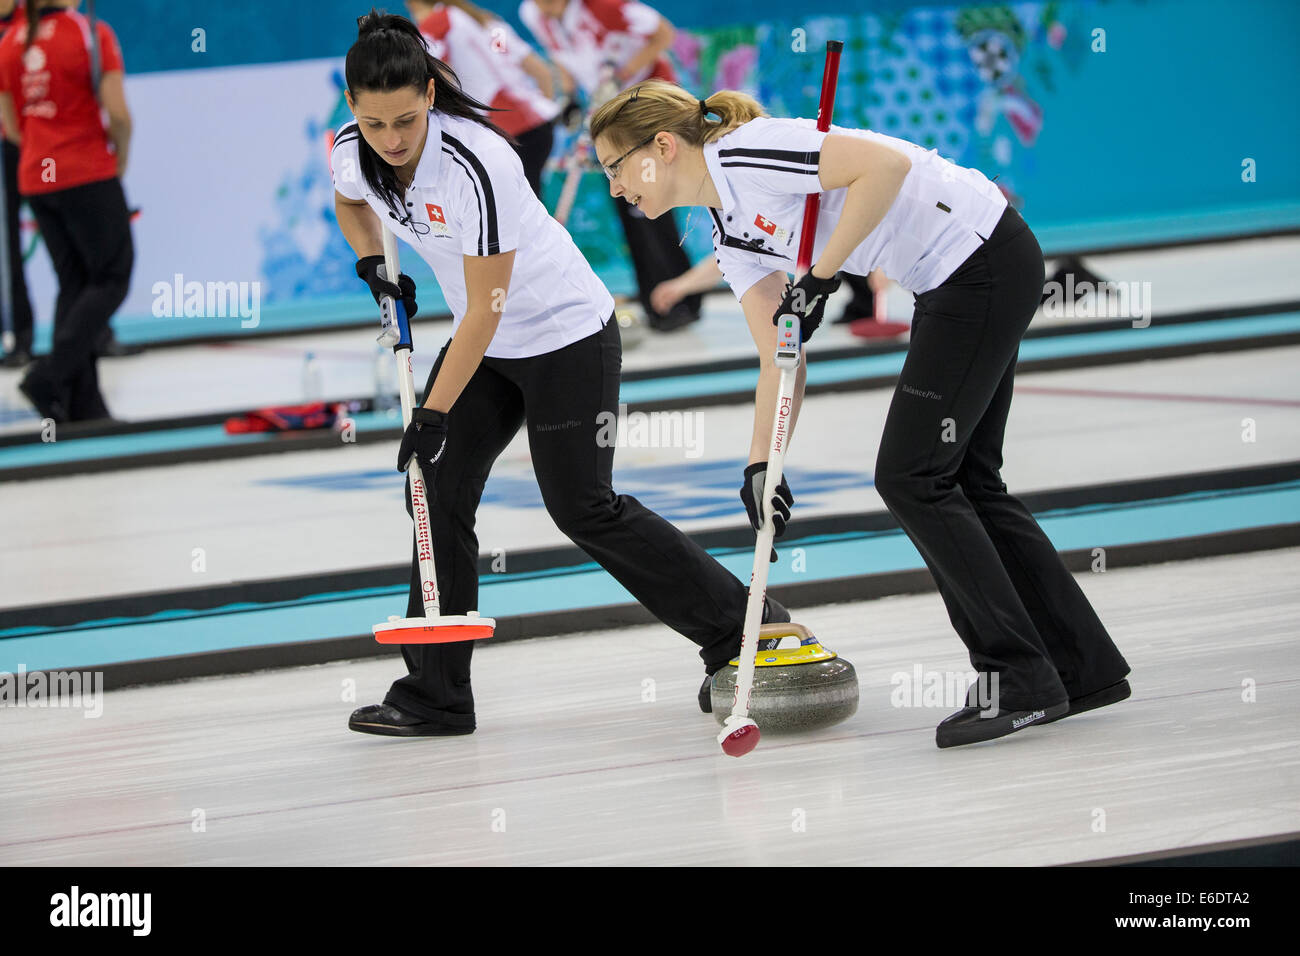 Suisse de l'équipe, Carmen Schafer (L) et Janine Greiner (R) au cours d'une compétition de curling aux Jeux Olympiques d'hiver, Banque D'Images